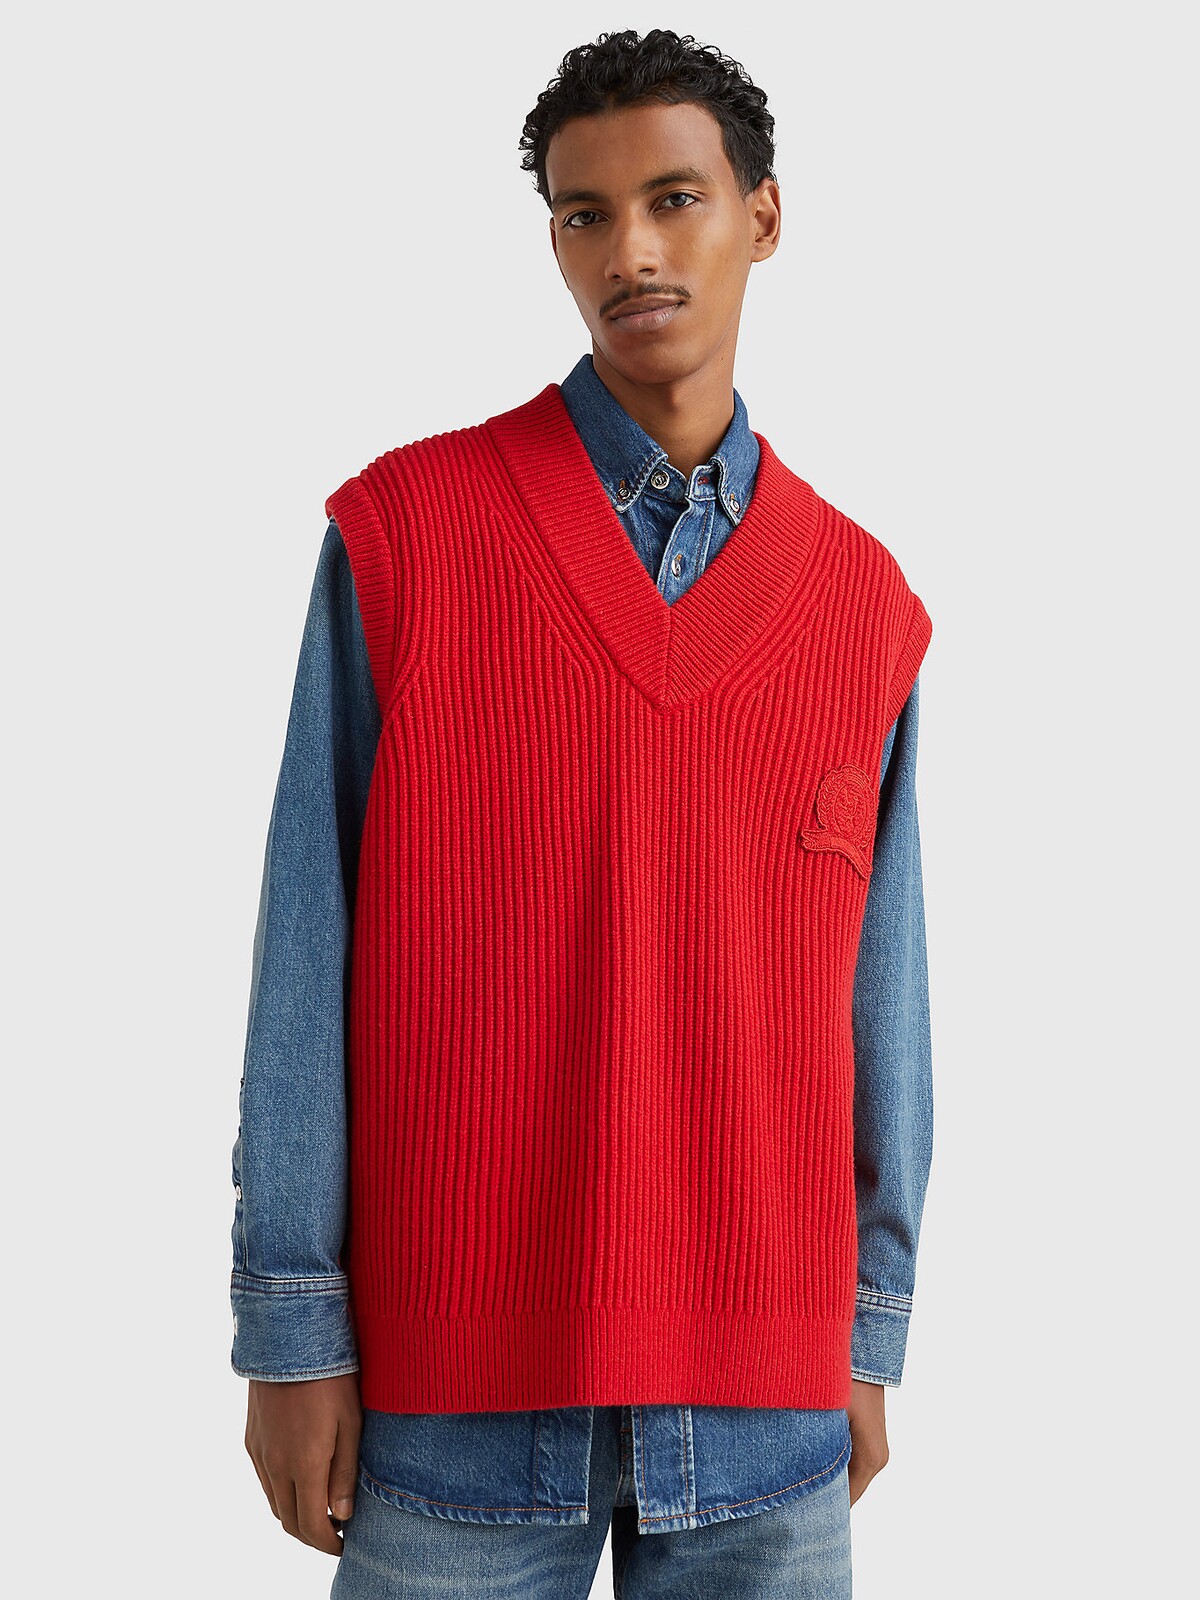 Pletená vesta s vrubkovanou štruktúrou v červenej farbe od značky Tommy Hilfiger stojí v akcii 115 eur. 